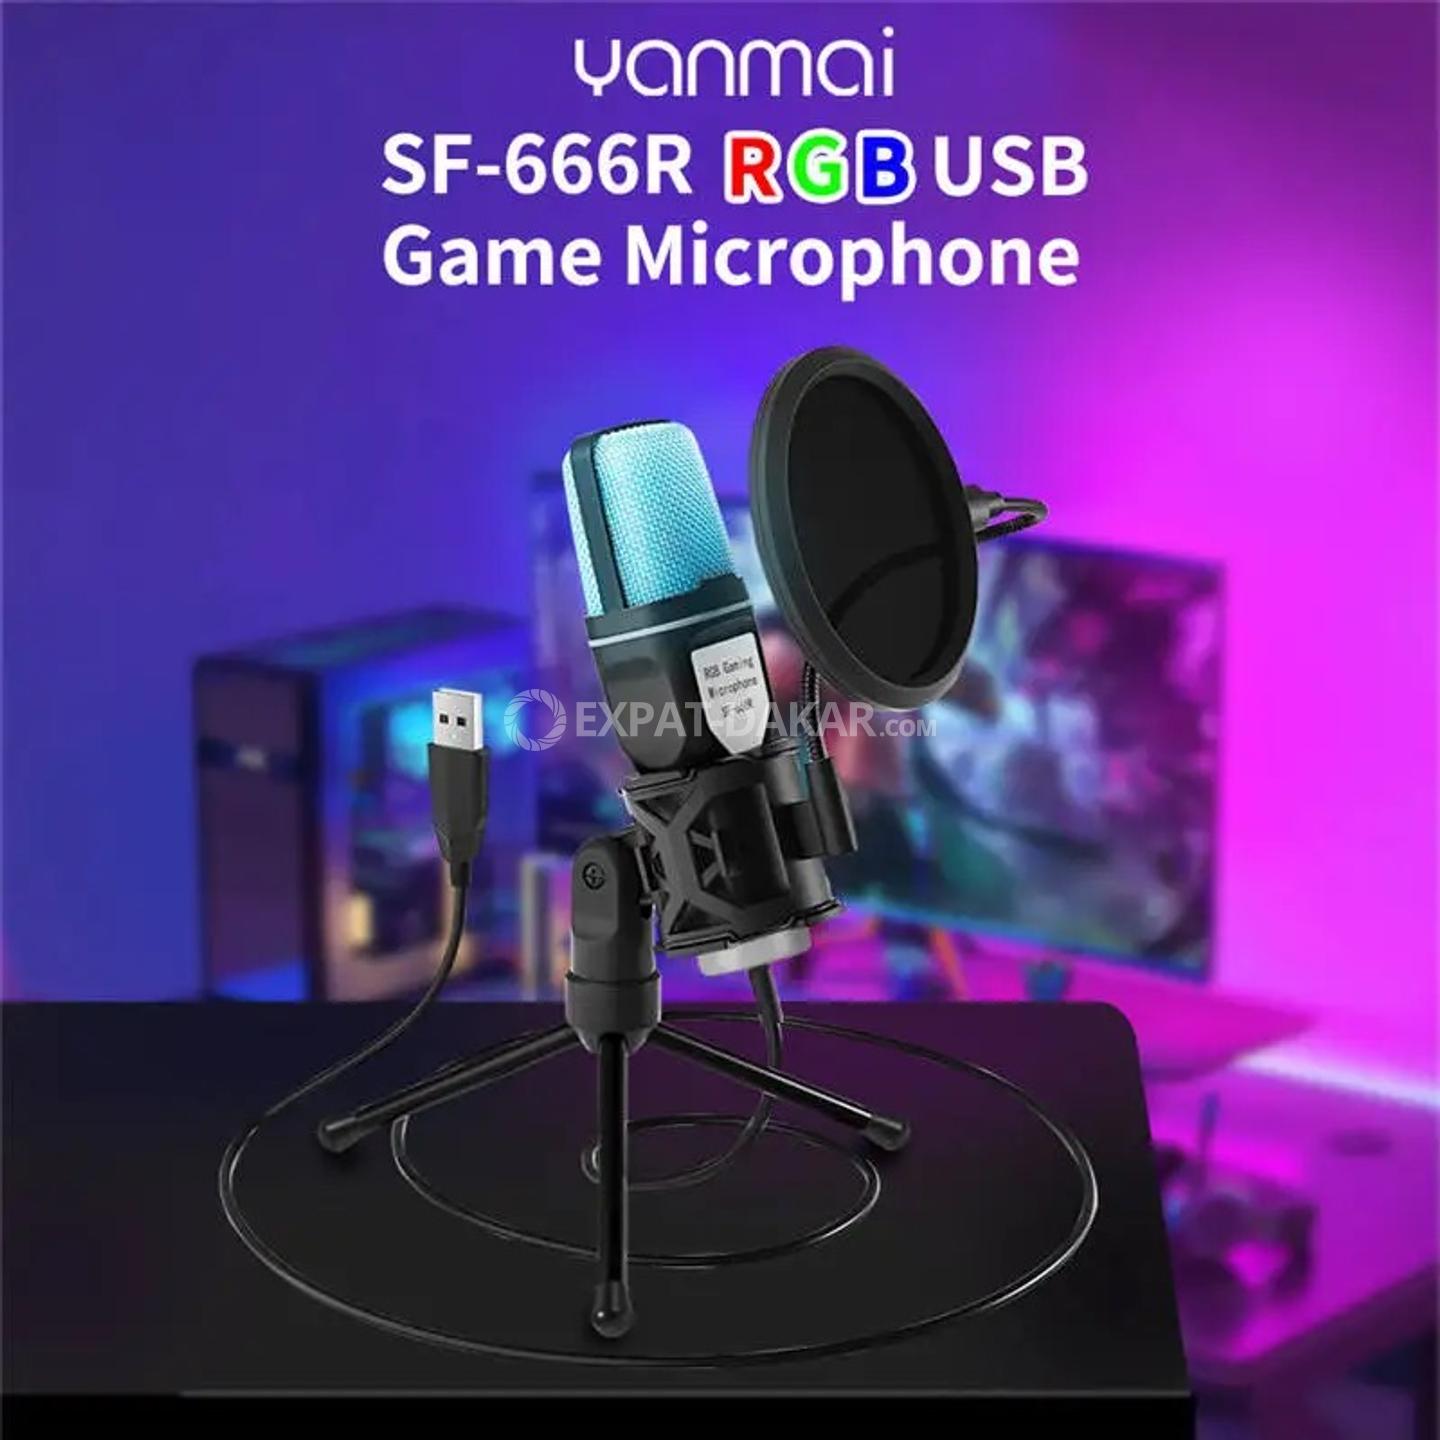 Microphone USB RVB à condensateur pour podcast statique, studio